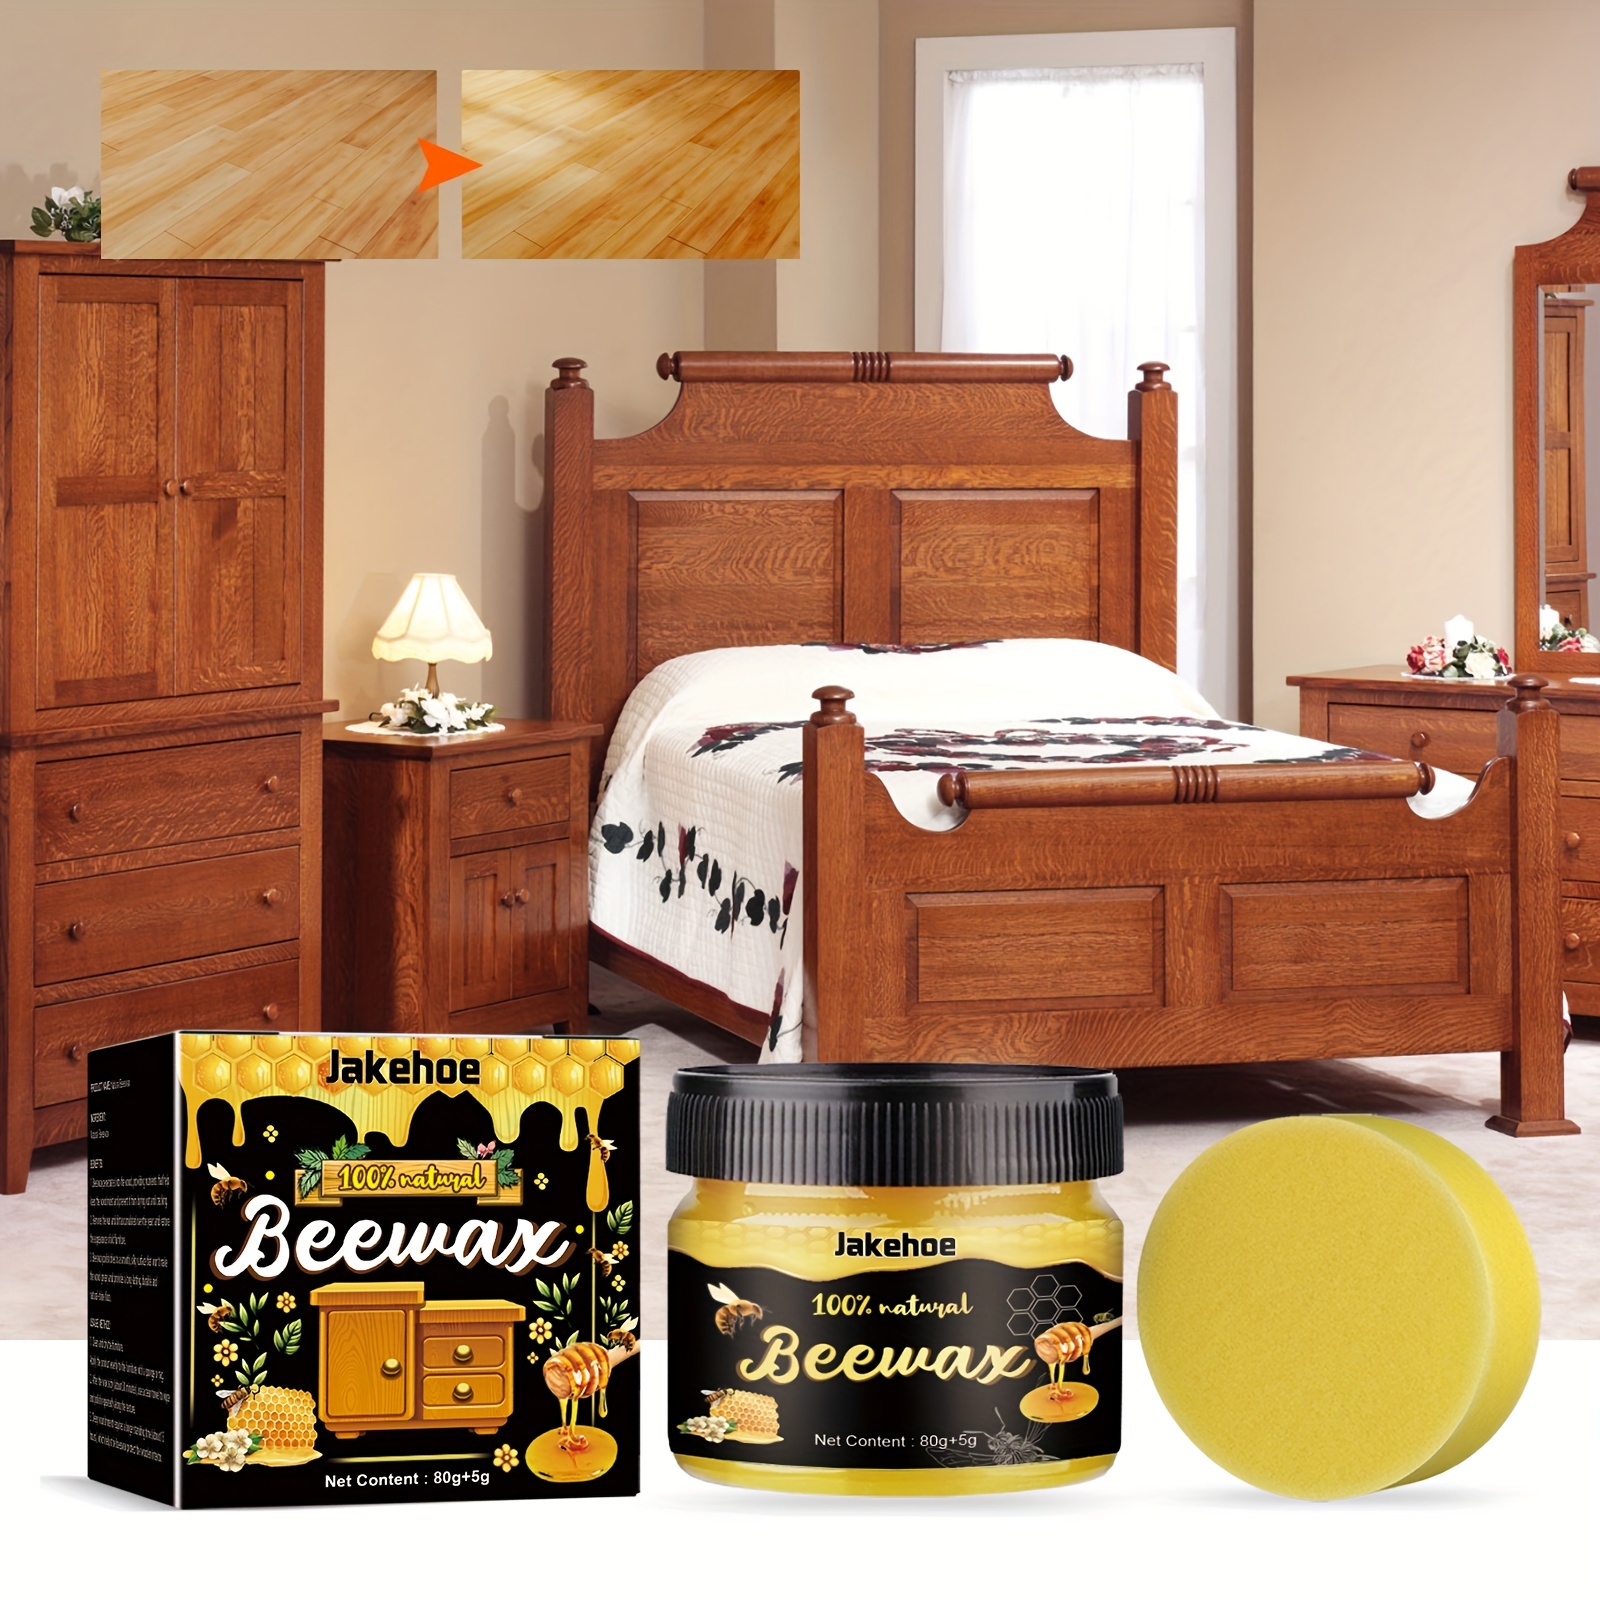  Condimento de madera Cera de abeja Cera de cuidado de madera  maciza Mantenimiento Limpieza pulida impermeable resistente al desgaste Cera  de muebles Cuidado de muebles (cera de abejas) : Salud y